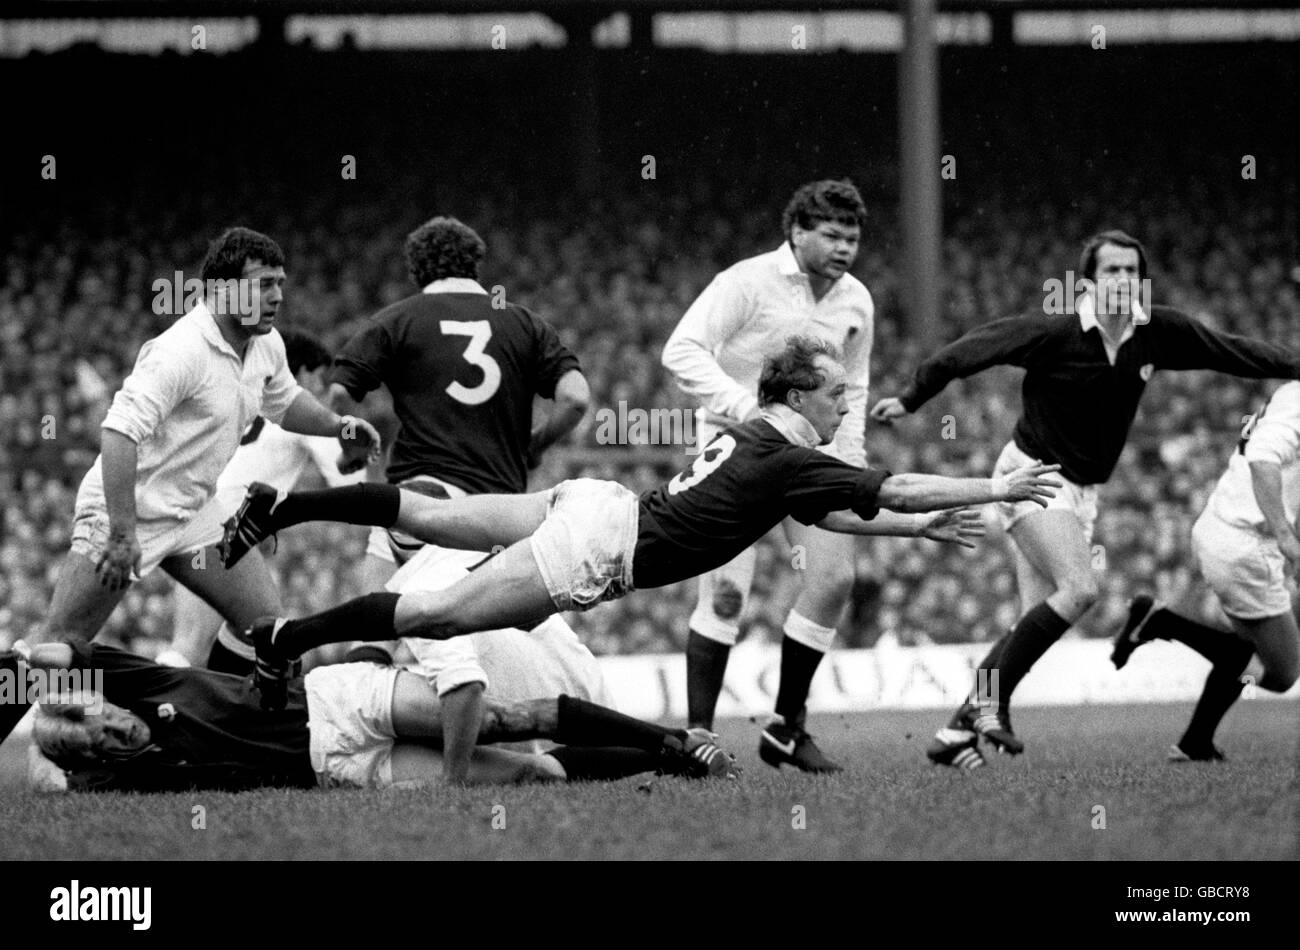 Rugby Union - Championnat des cinq nations - Angleterre / Ecosse.Iain Hunter, en Écosse, libère le ballon sur son dos. Banque D'Images